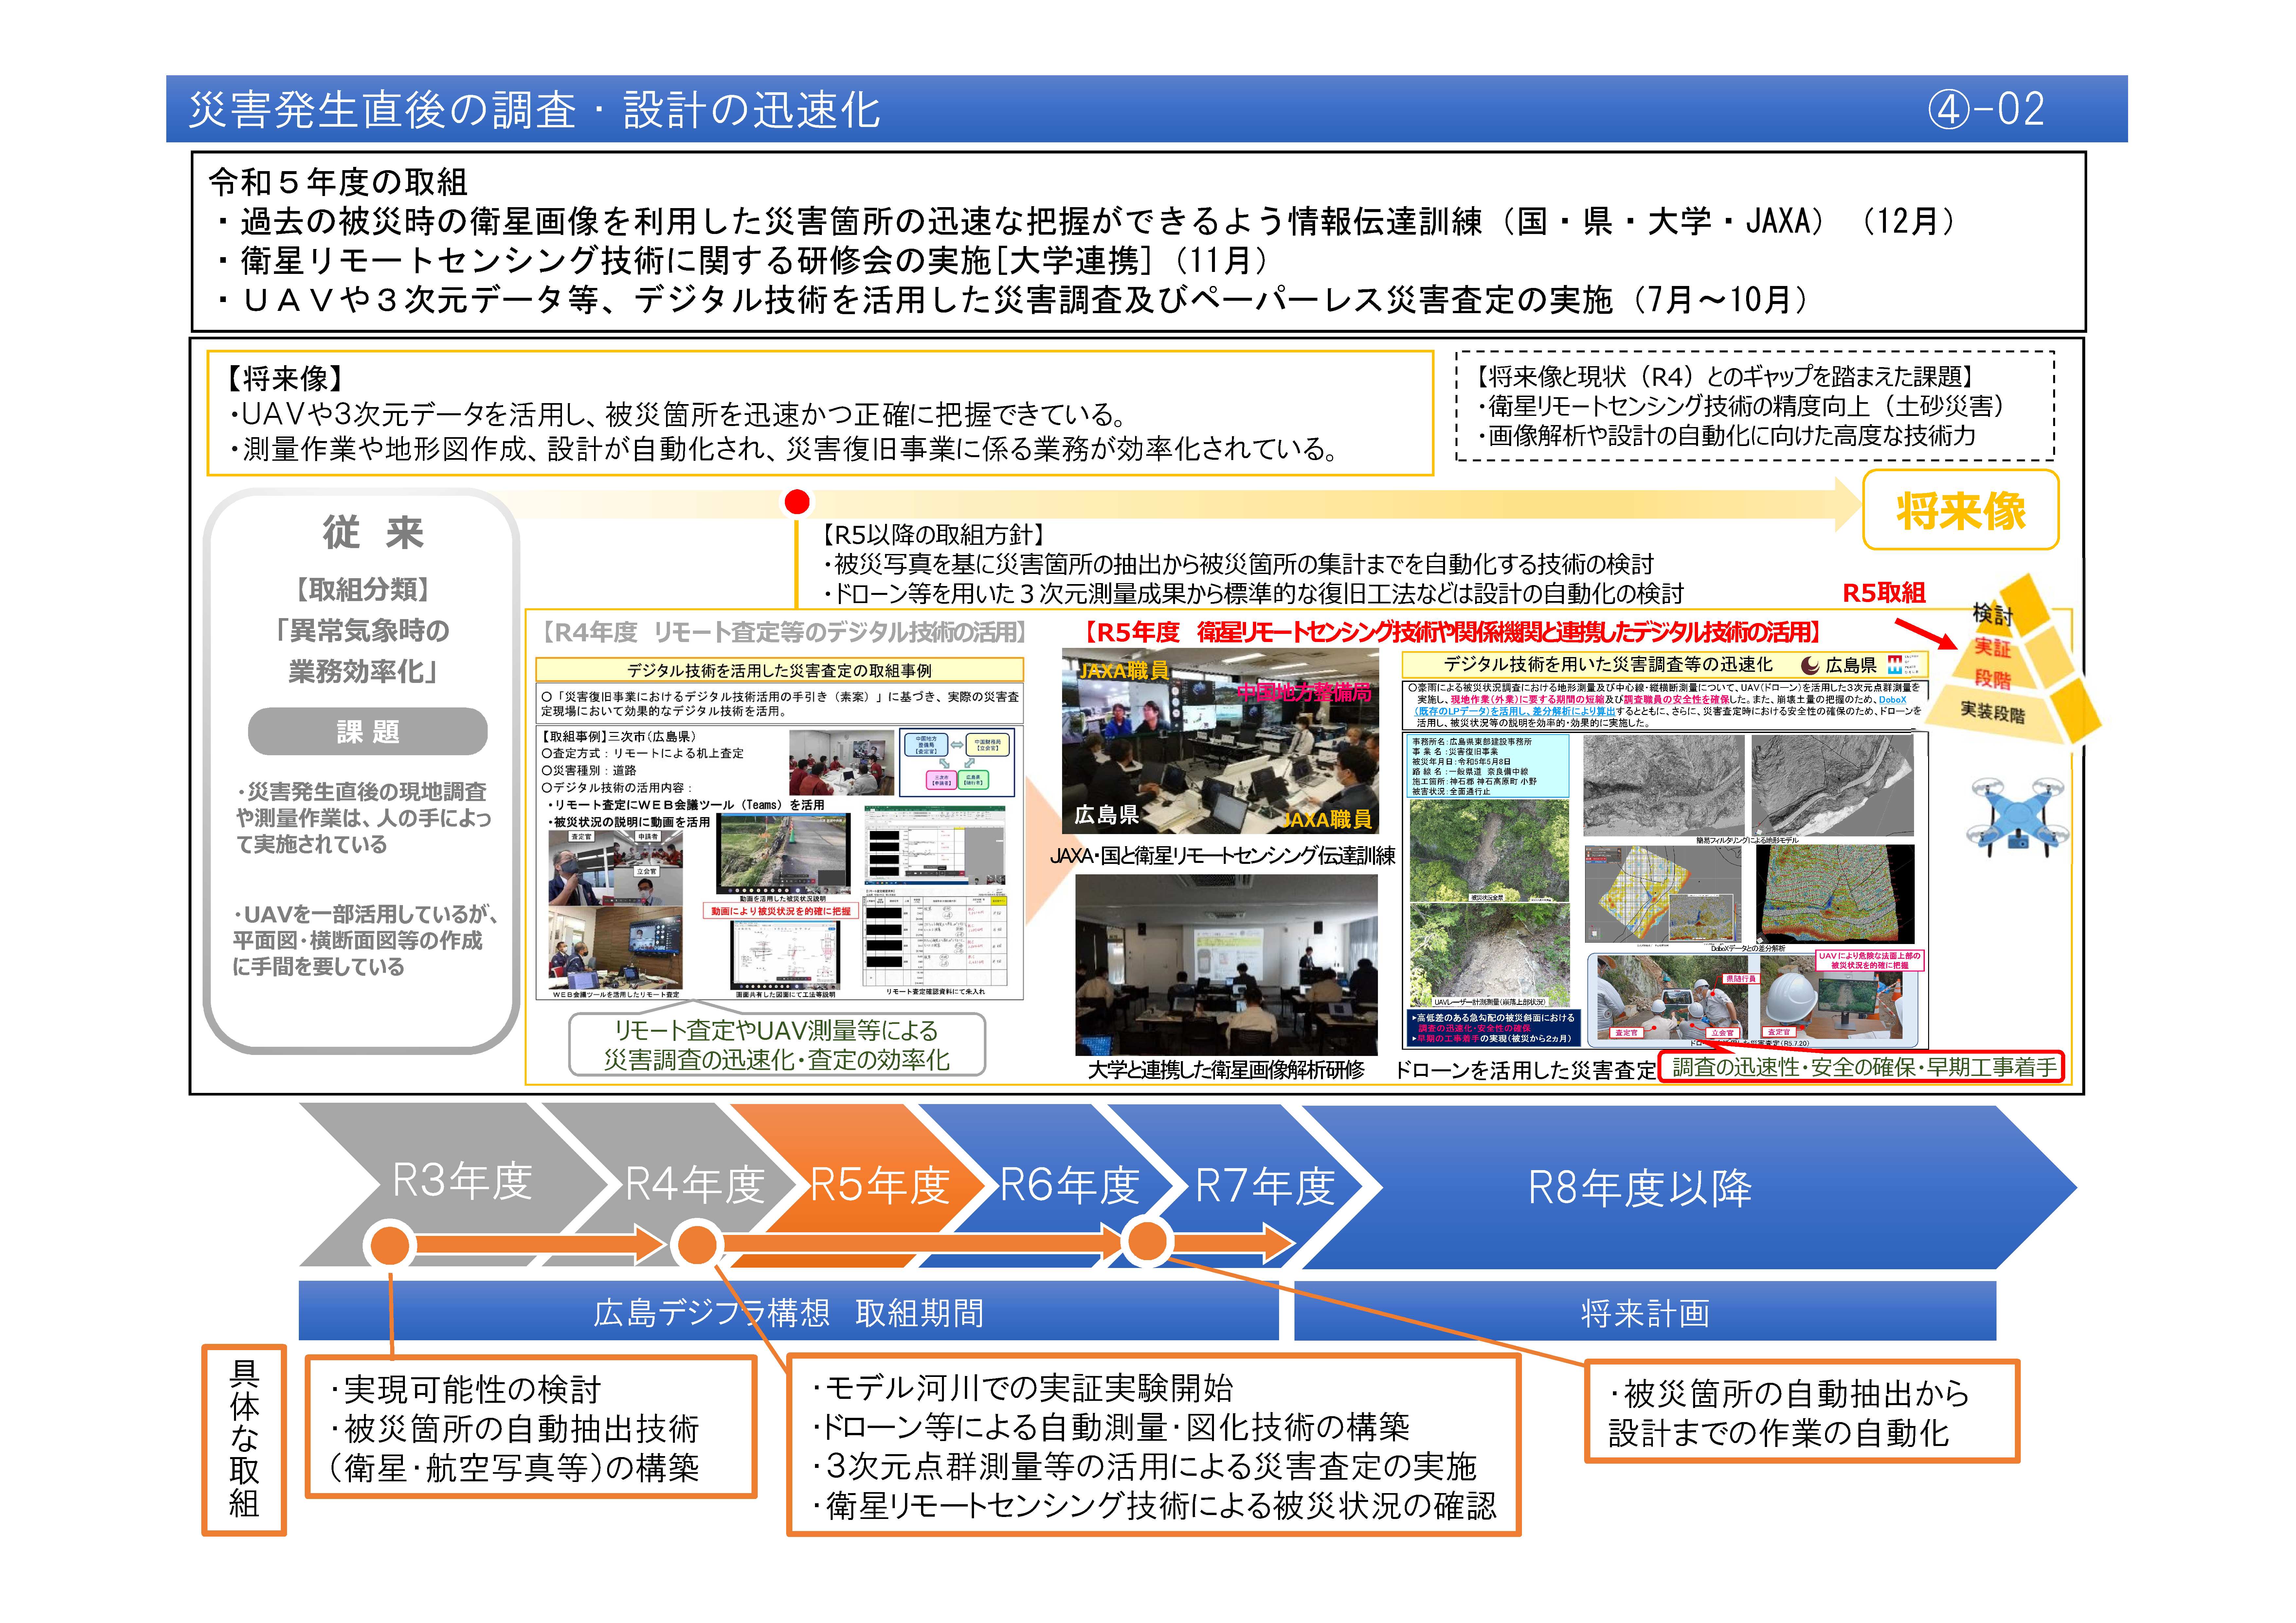 【(4)-2】災害発生直後の調査・設計の迅速化